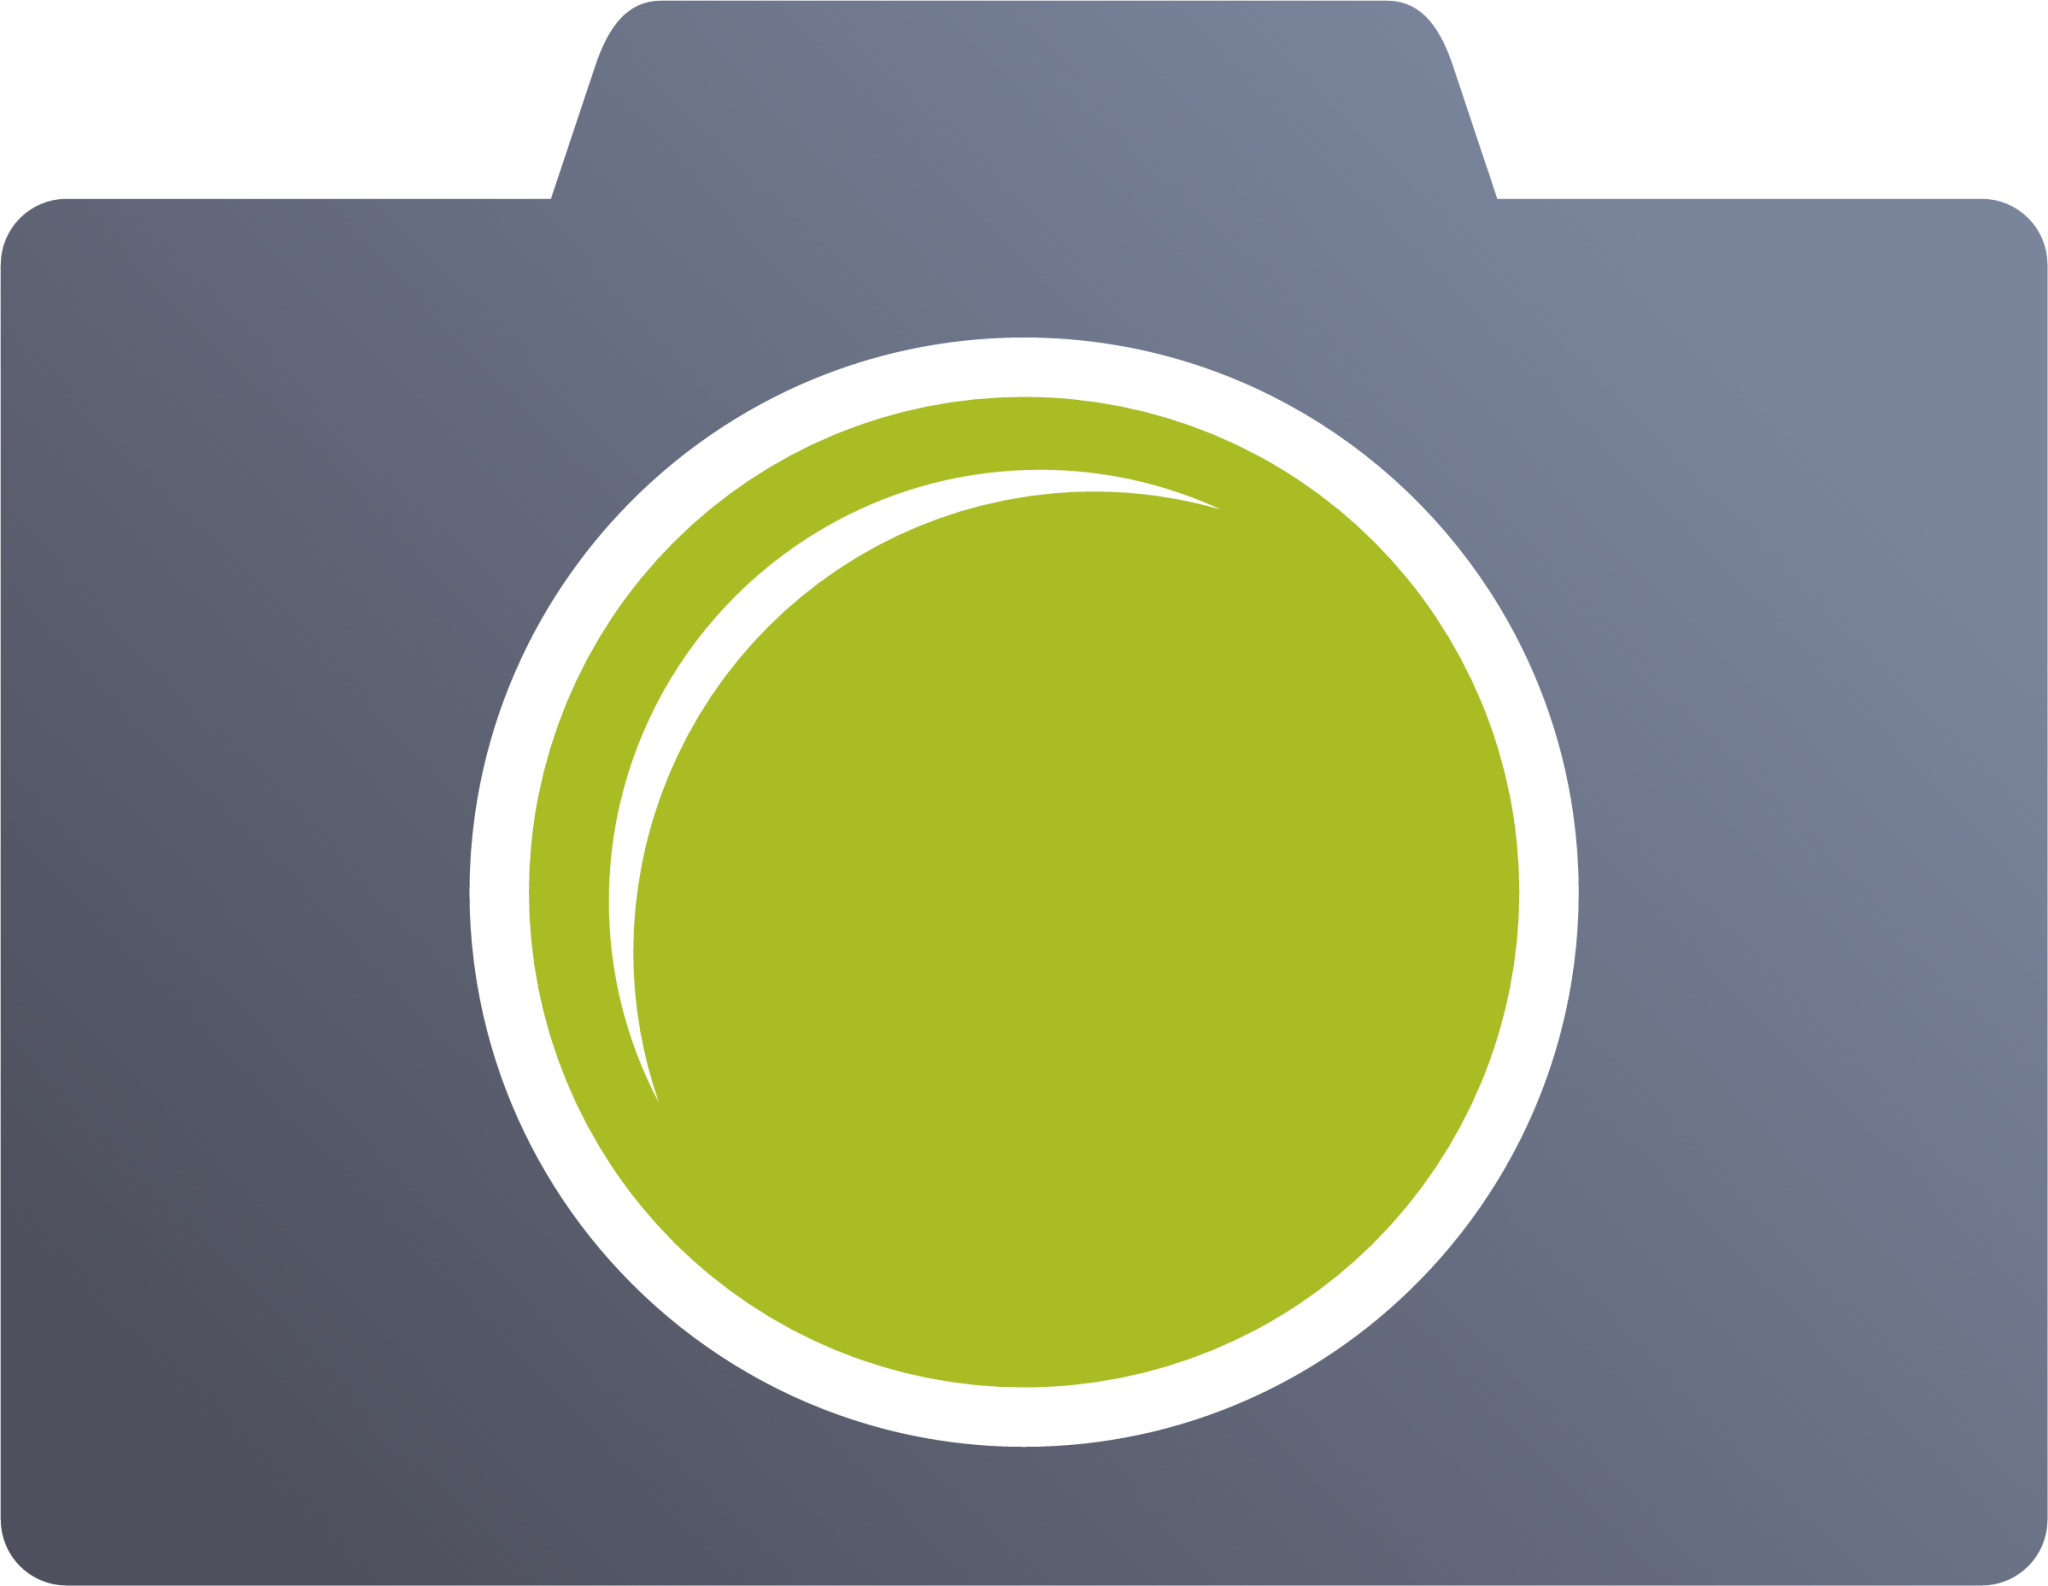 photo camera icon